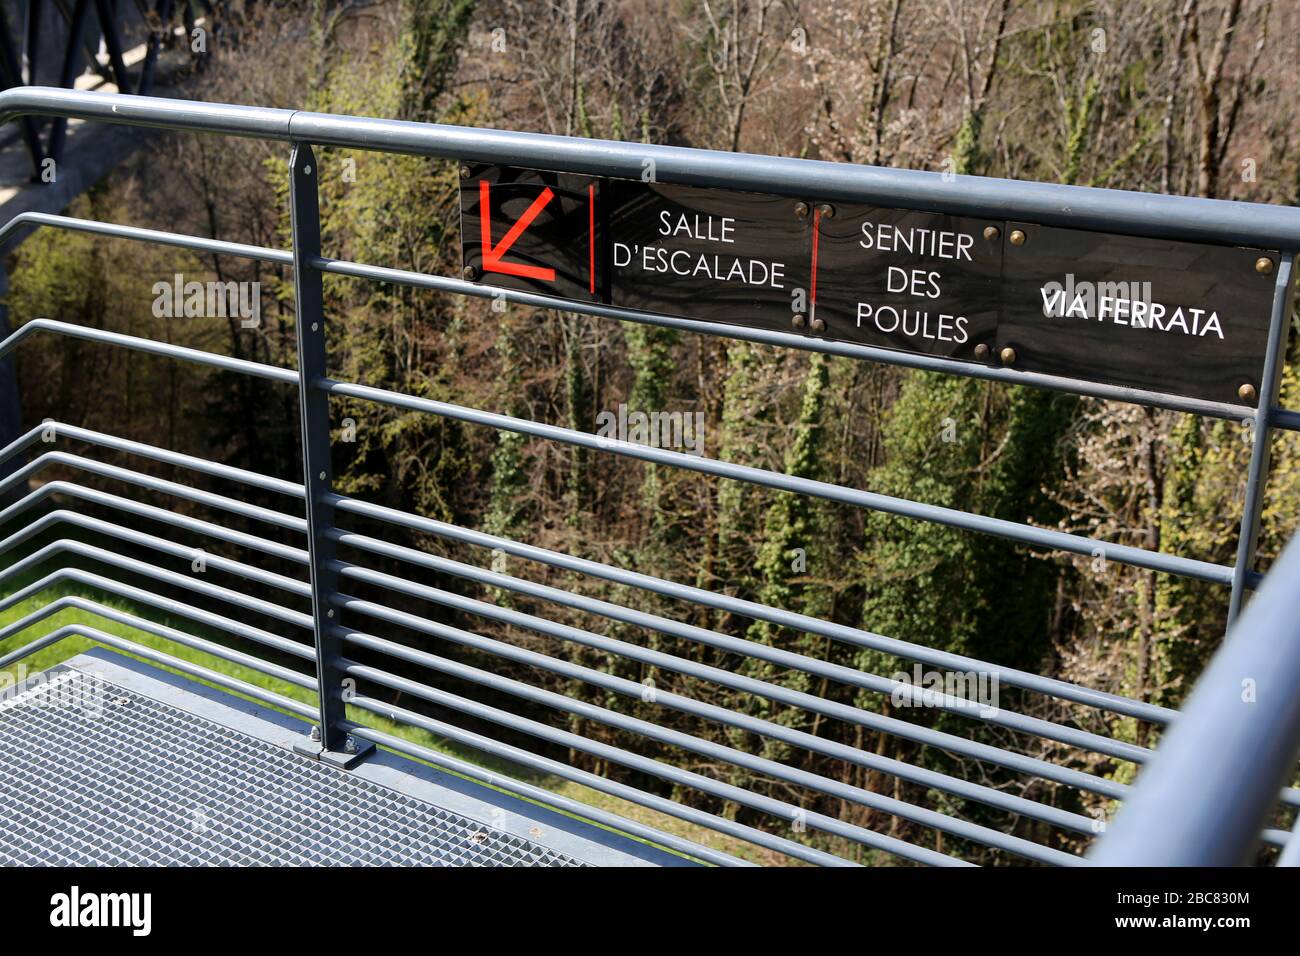 Salle d'escalade. Sentier des Poules. Via Ferrata. Panneau sur une barrière. Saint-Gervais-les-Bains. Haute-Savoie. France. Stock Photo